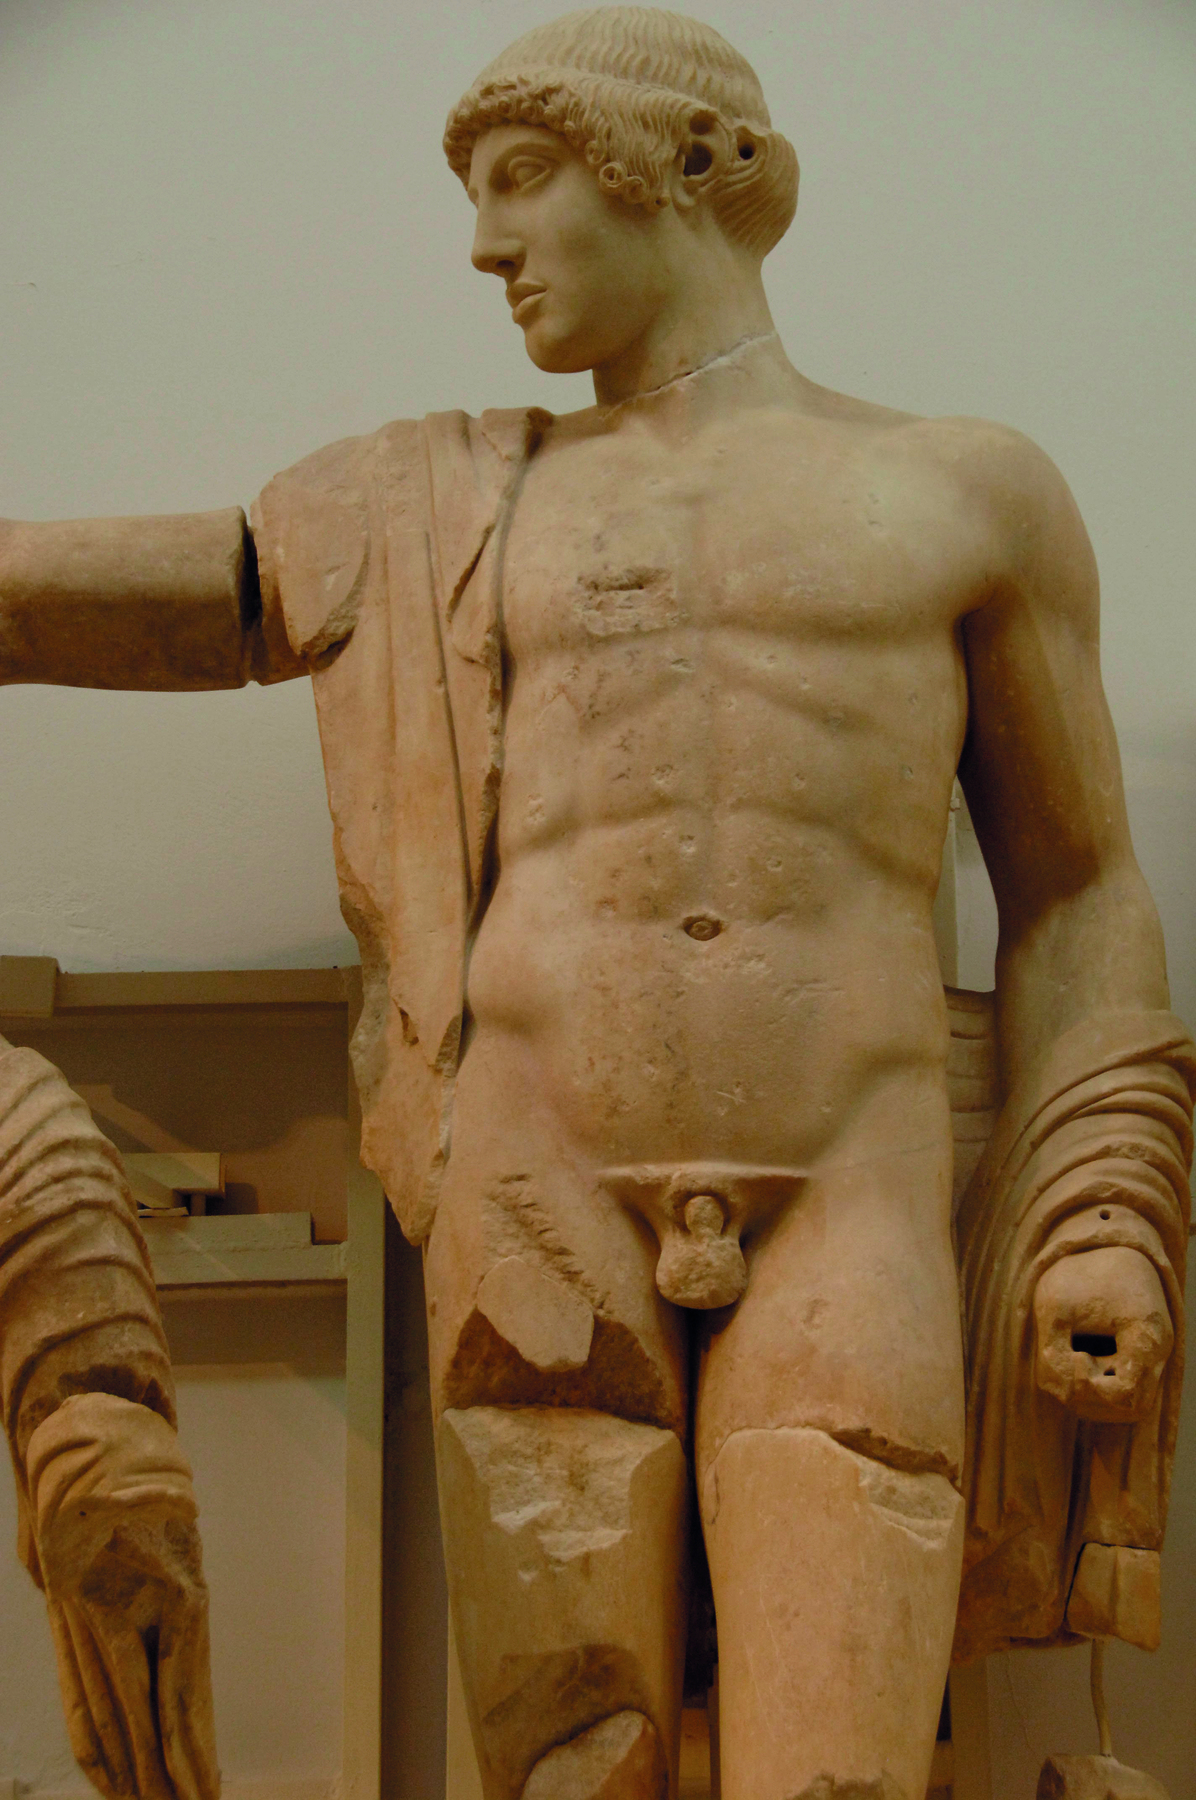 Escultura. Homem com o corpo desnudo, visto de perfil, com cabelos curtos e uma faixa de tecido sobre seu ombro.